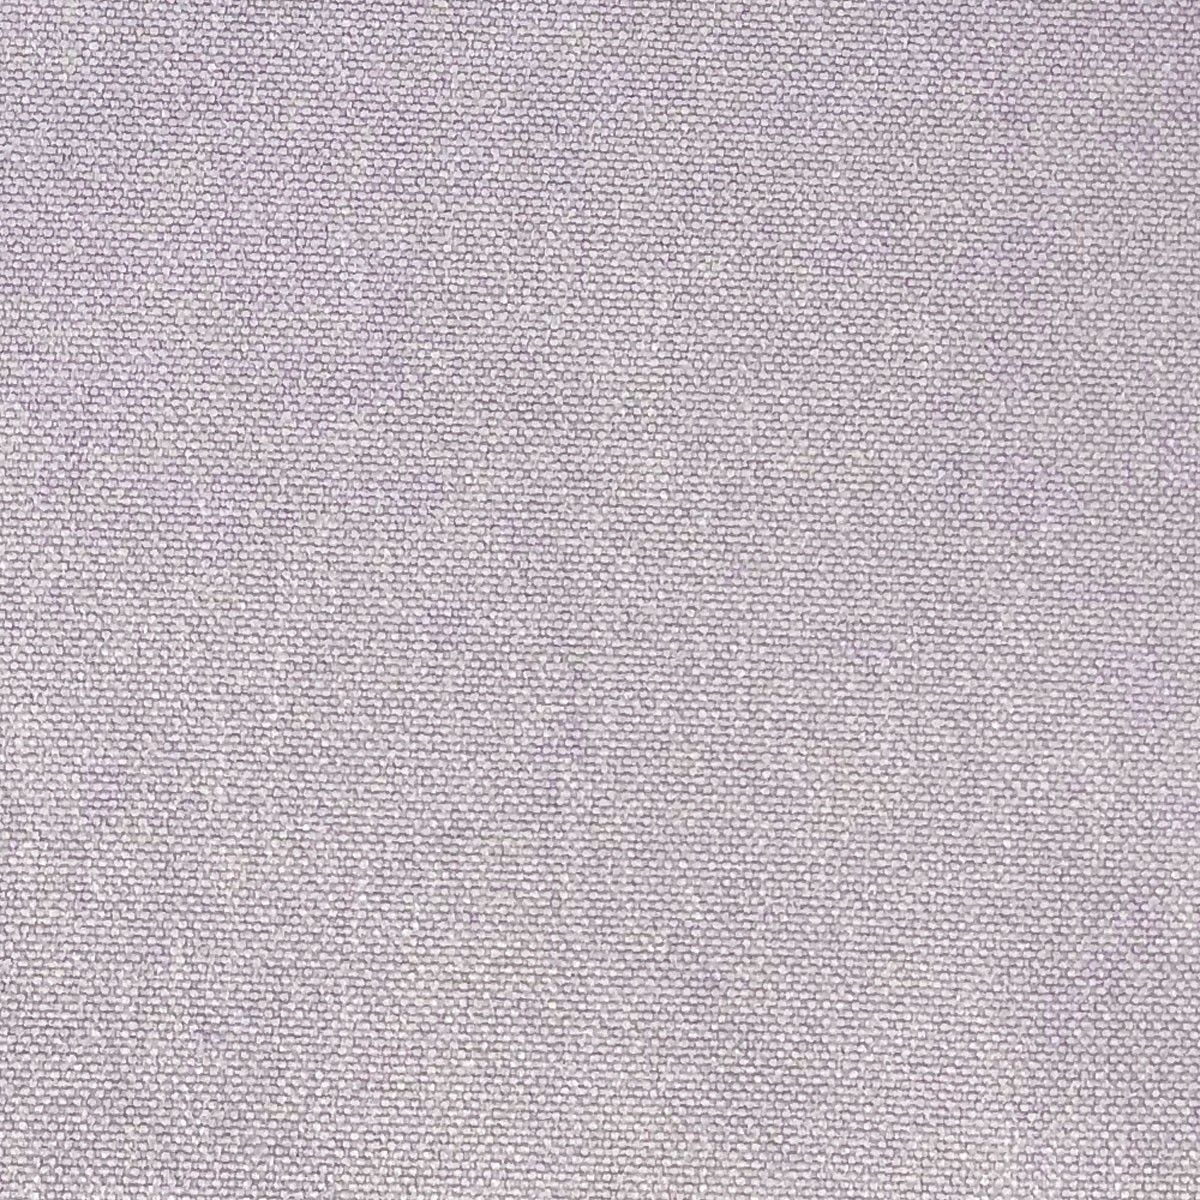 Glinara Wisteria Fabric by Chatham Glyn